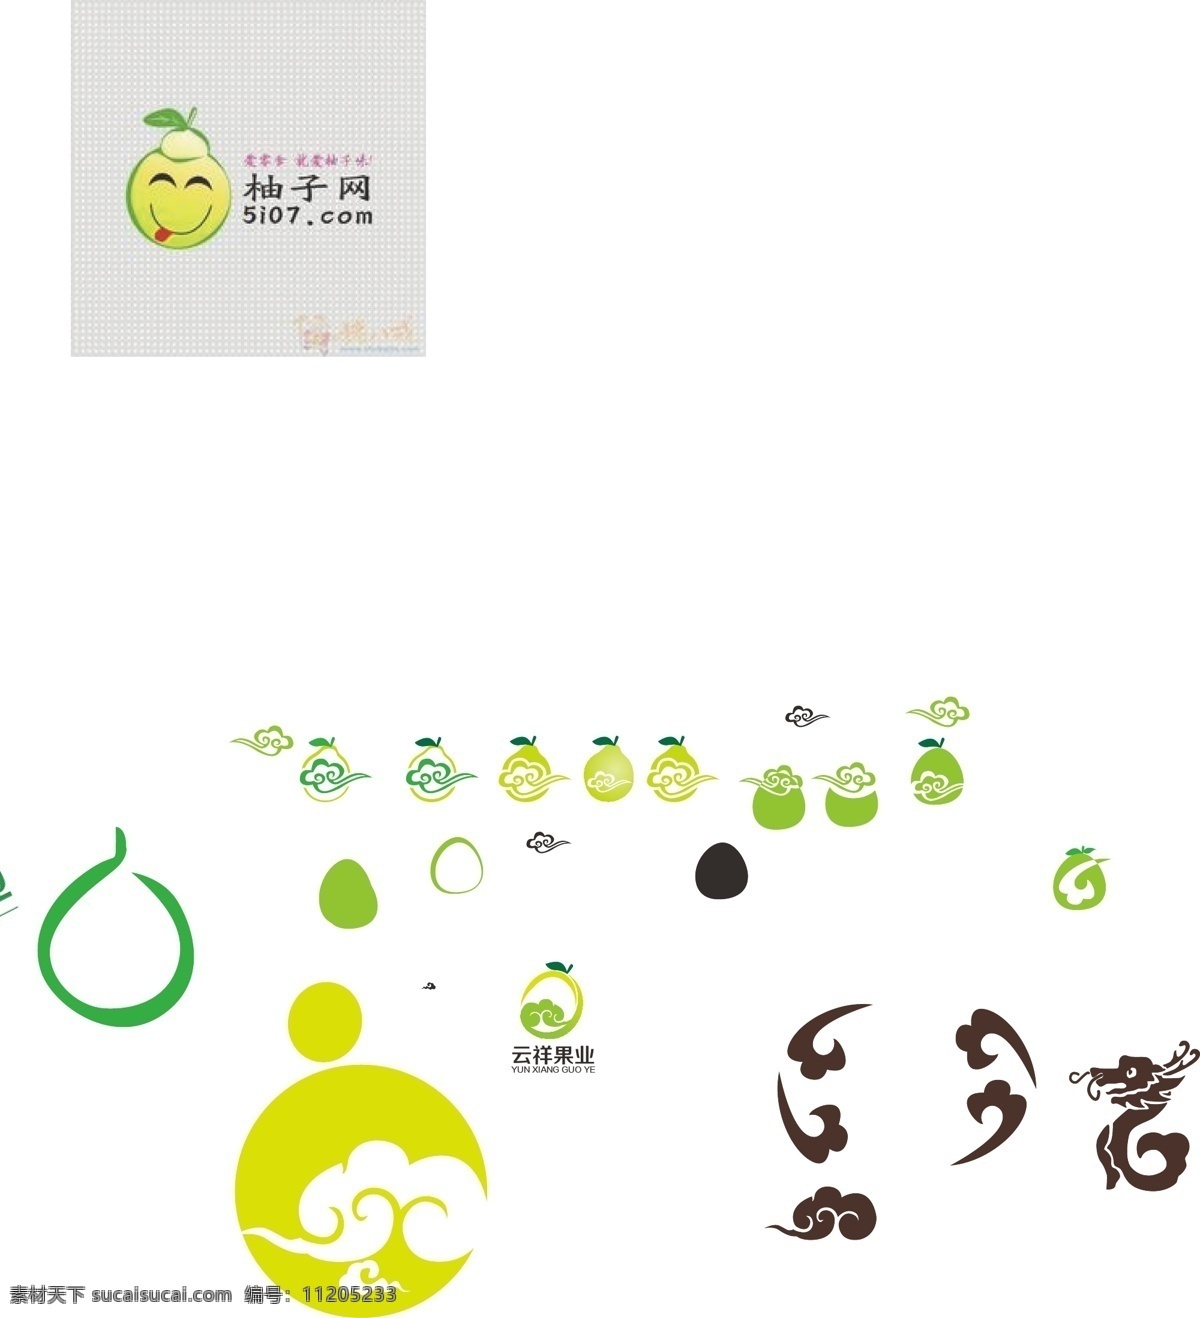 绿色 果园 柚子 logo 标志 绿色果园标志 果园logo 柚子logo 绿色logo 祥云 祥云logo 白色